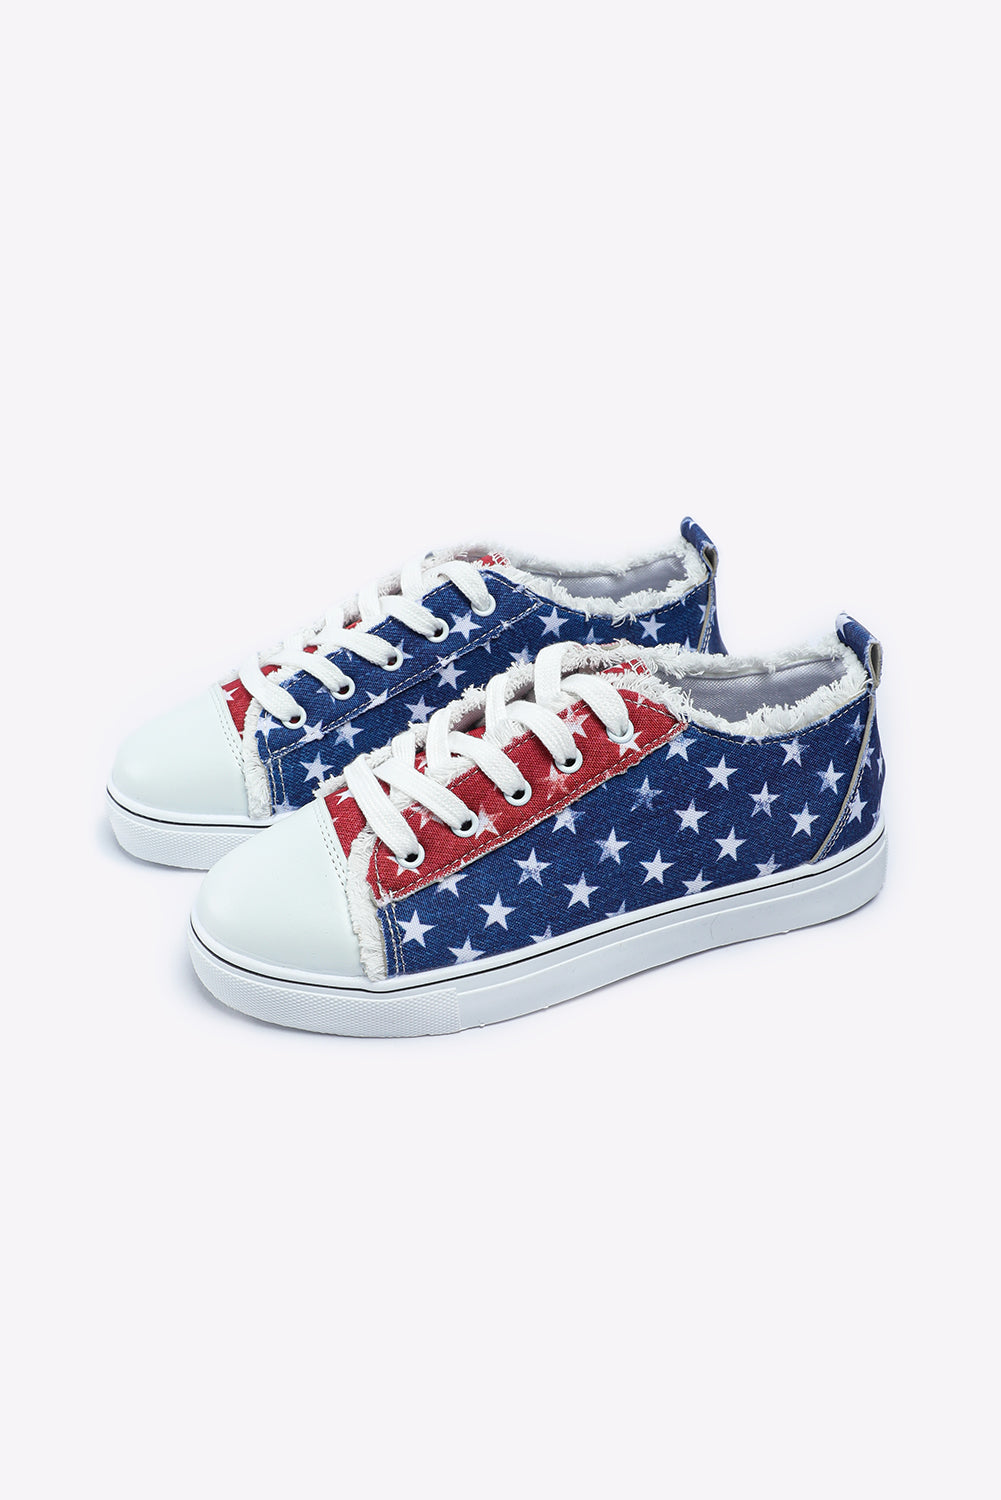 American Flag Sneakers